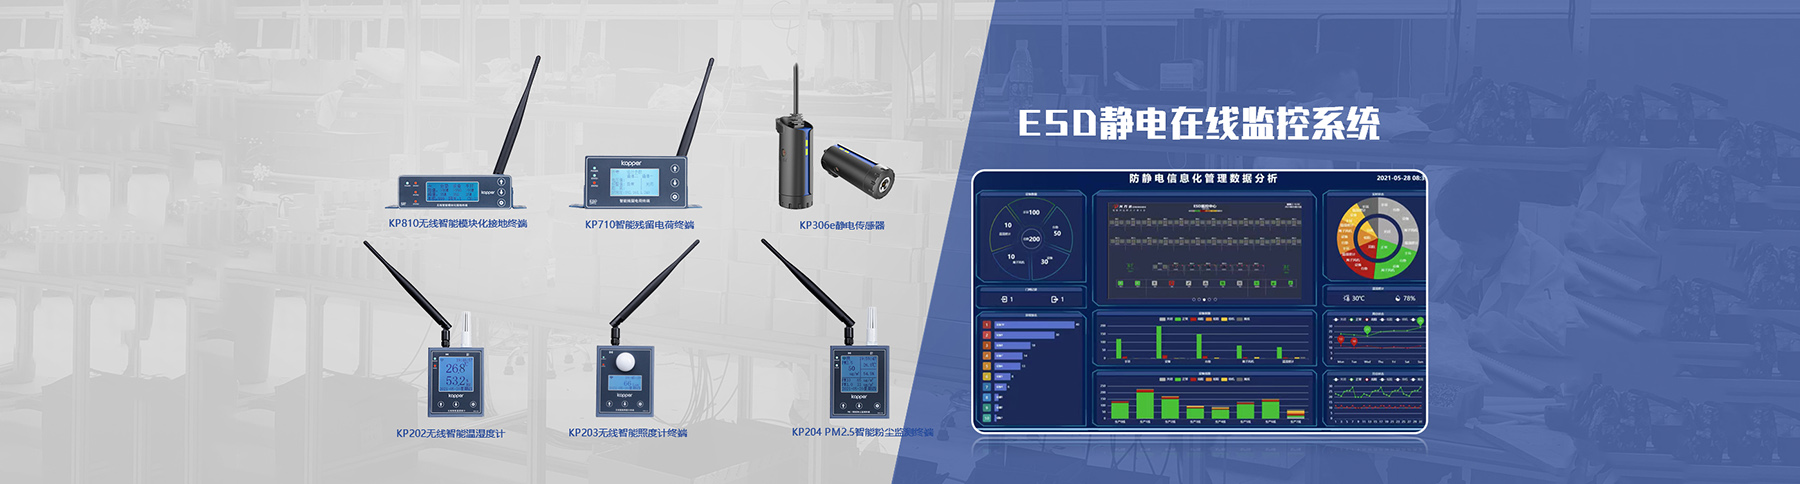 ESD靜電監控系統